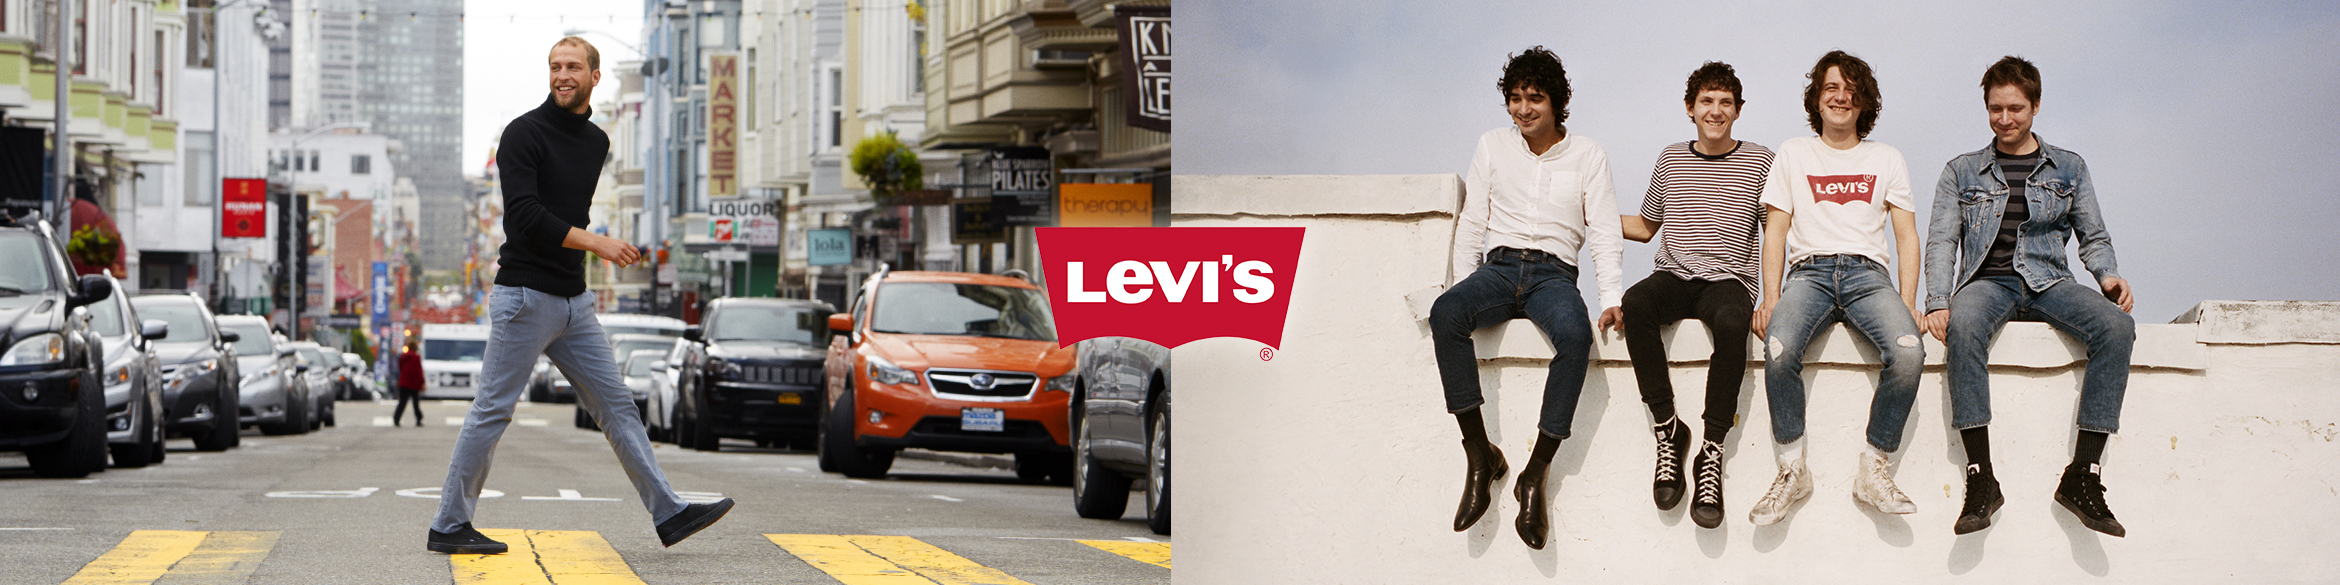 Levi's Premium Outlet